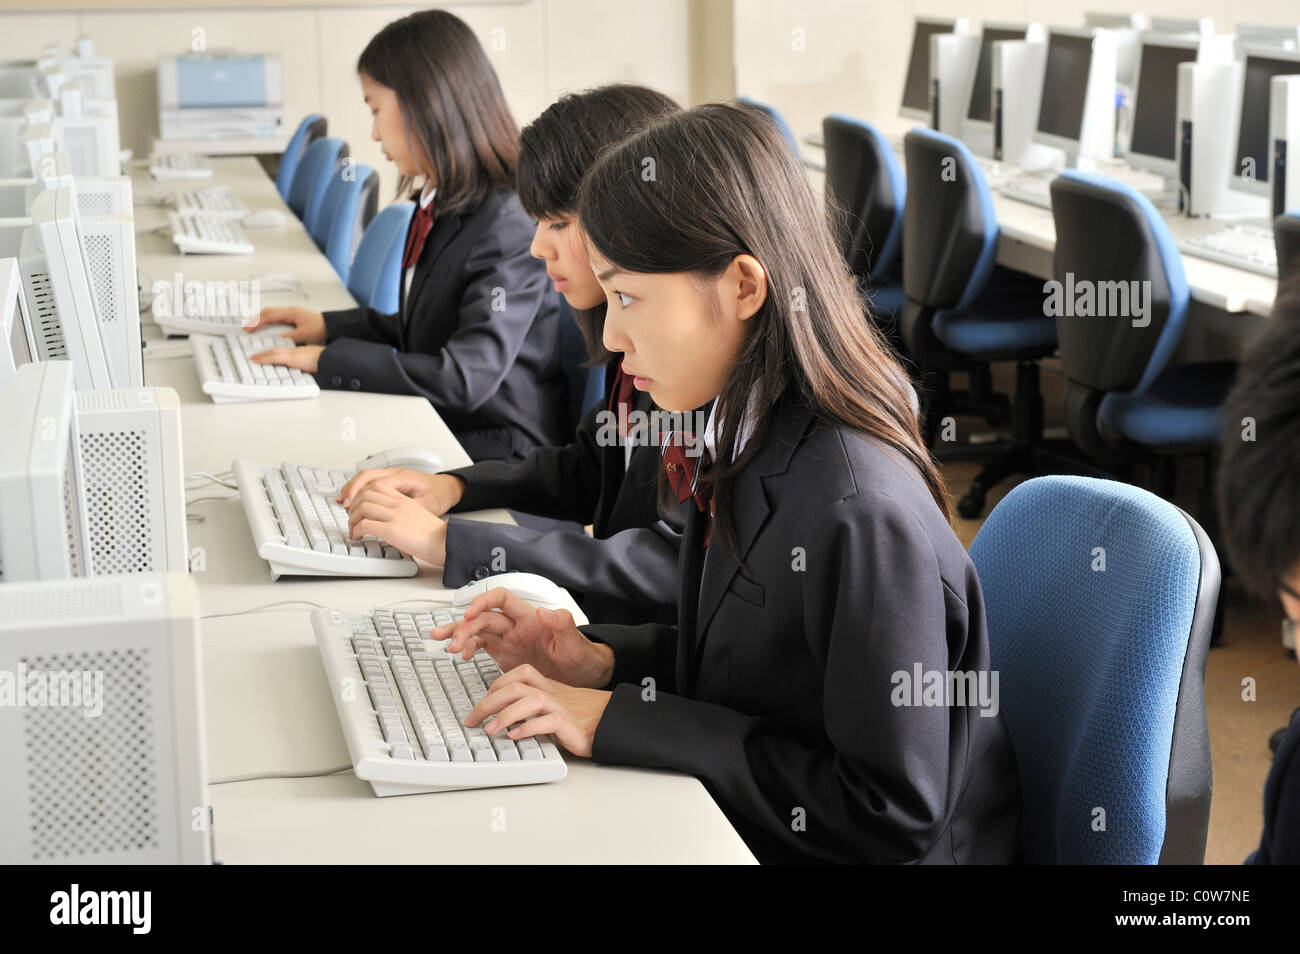 Les élèves du secondaire qui étudient avec ordinateur personnel Banque D'Images